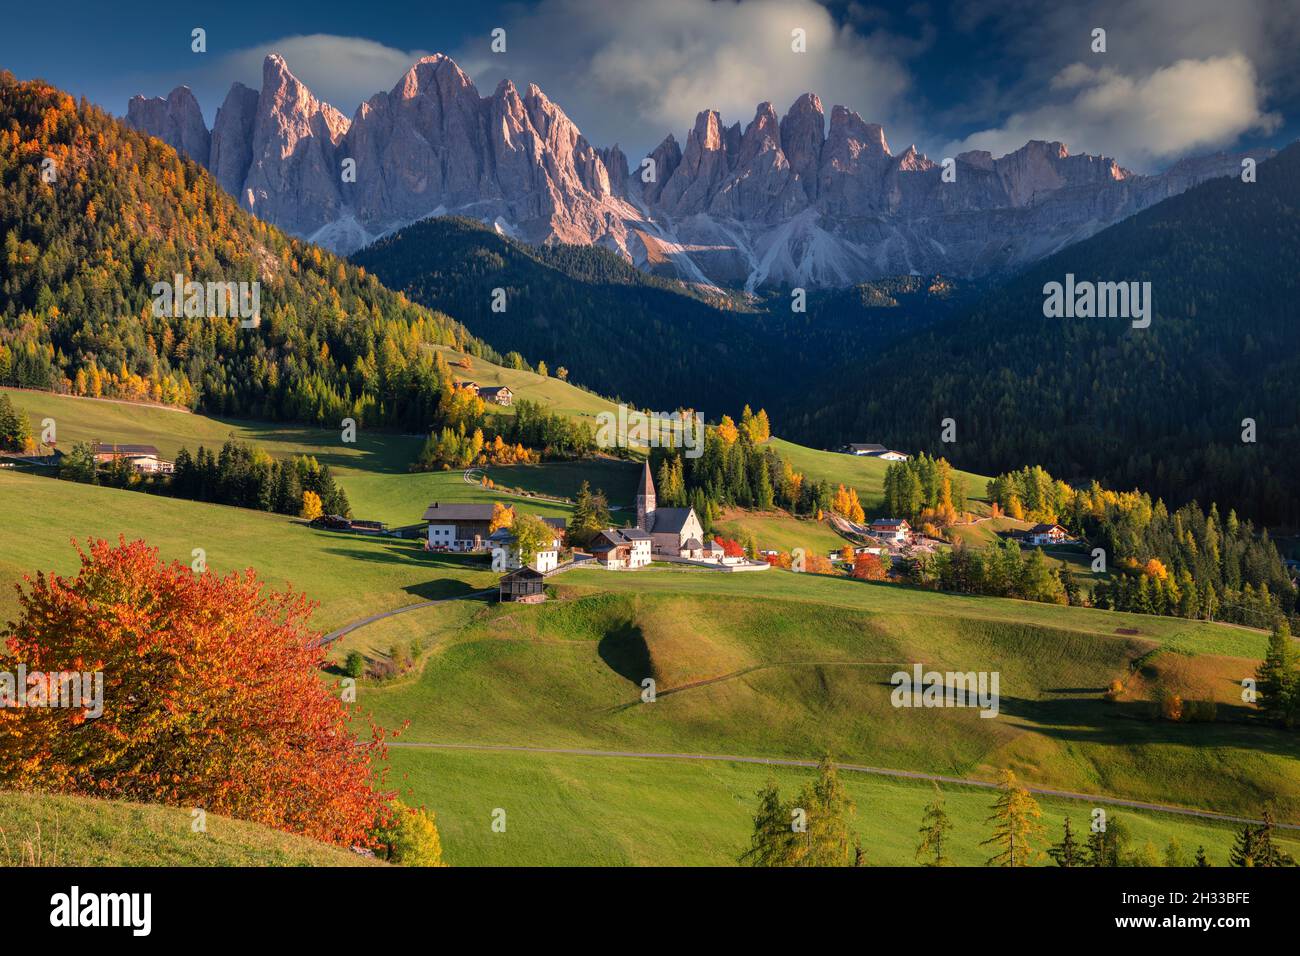 Herbst in den Alpen. Schönes Dorf in St. Magdalena mit zauberhaften Dolomitenbergen in einem wunderschönen Val di Funes Tal, Südtirol, italienische Alpen in Autu Stockfoto